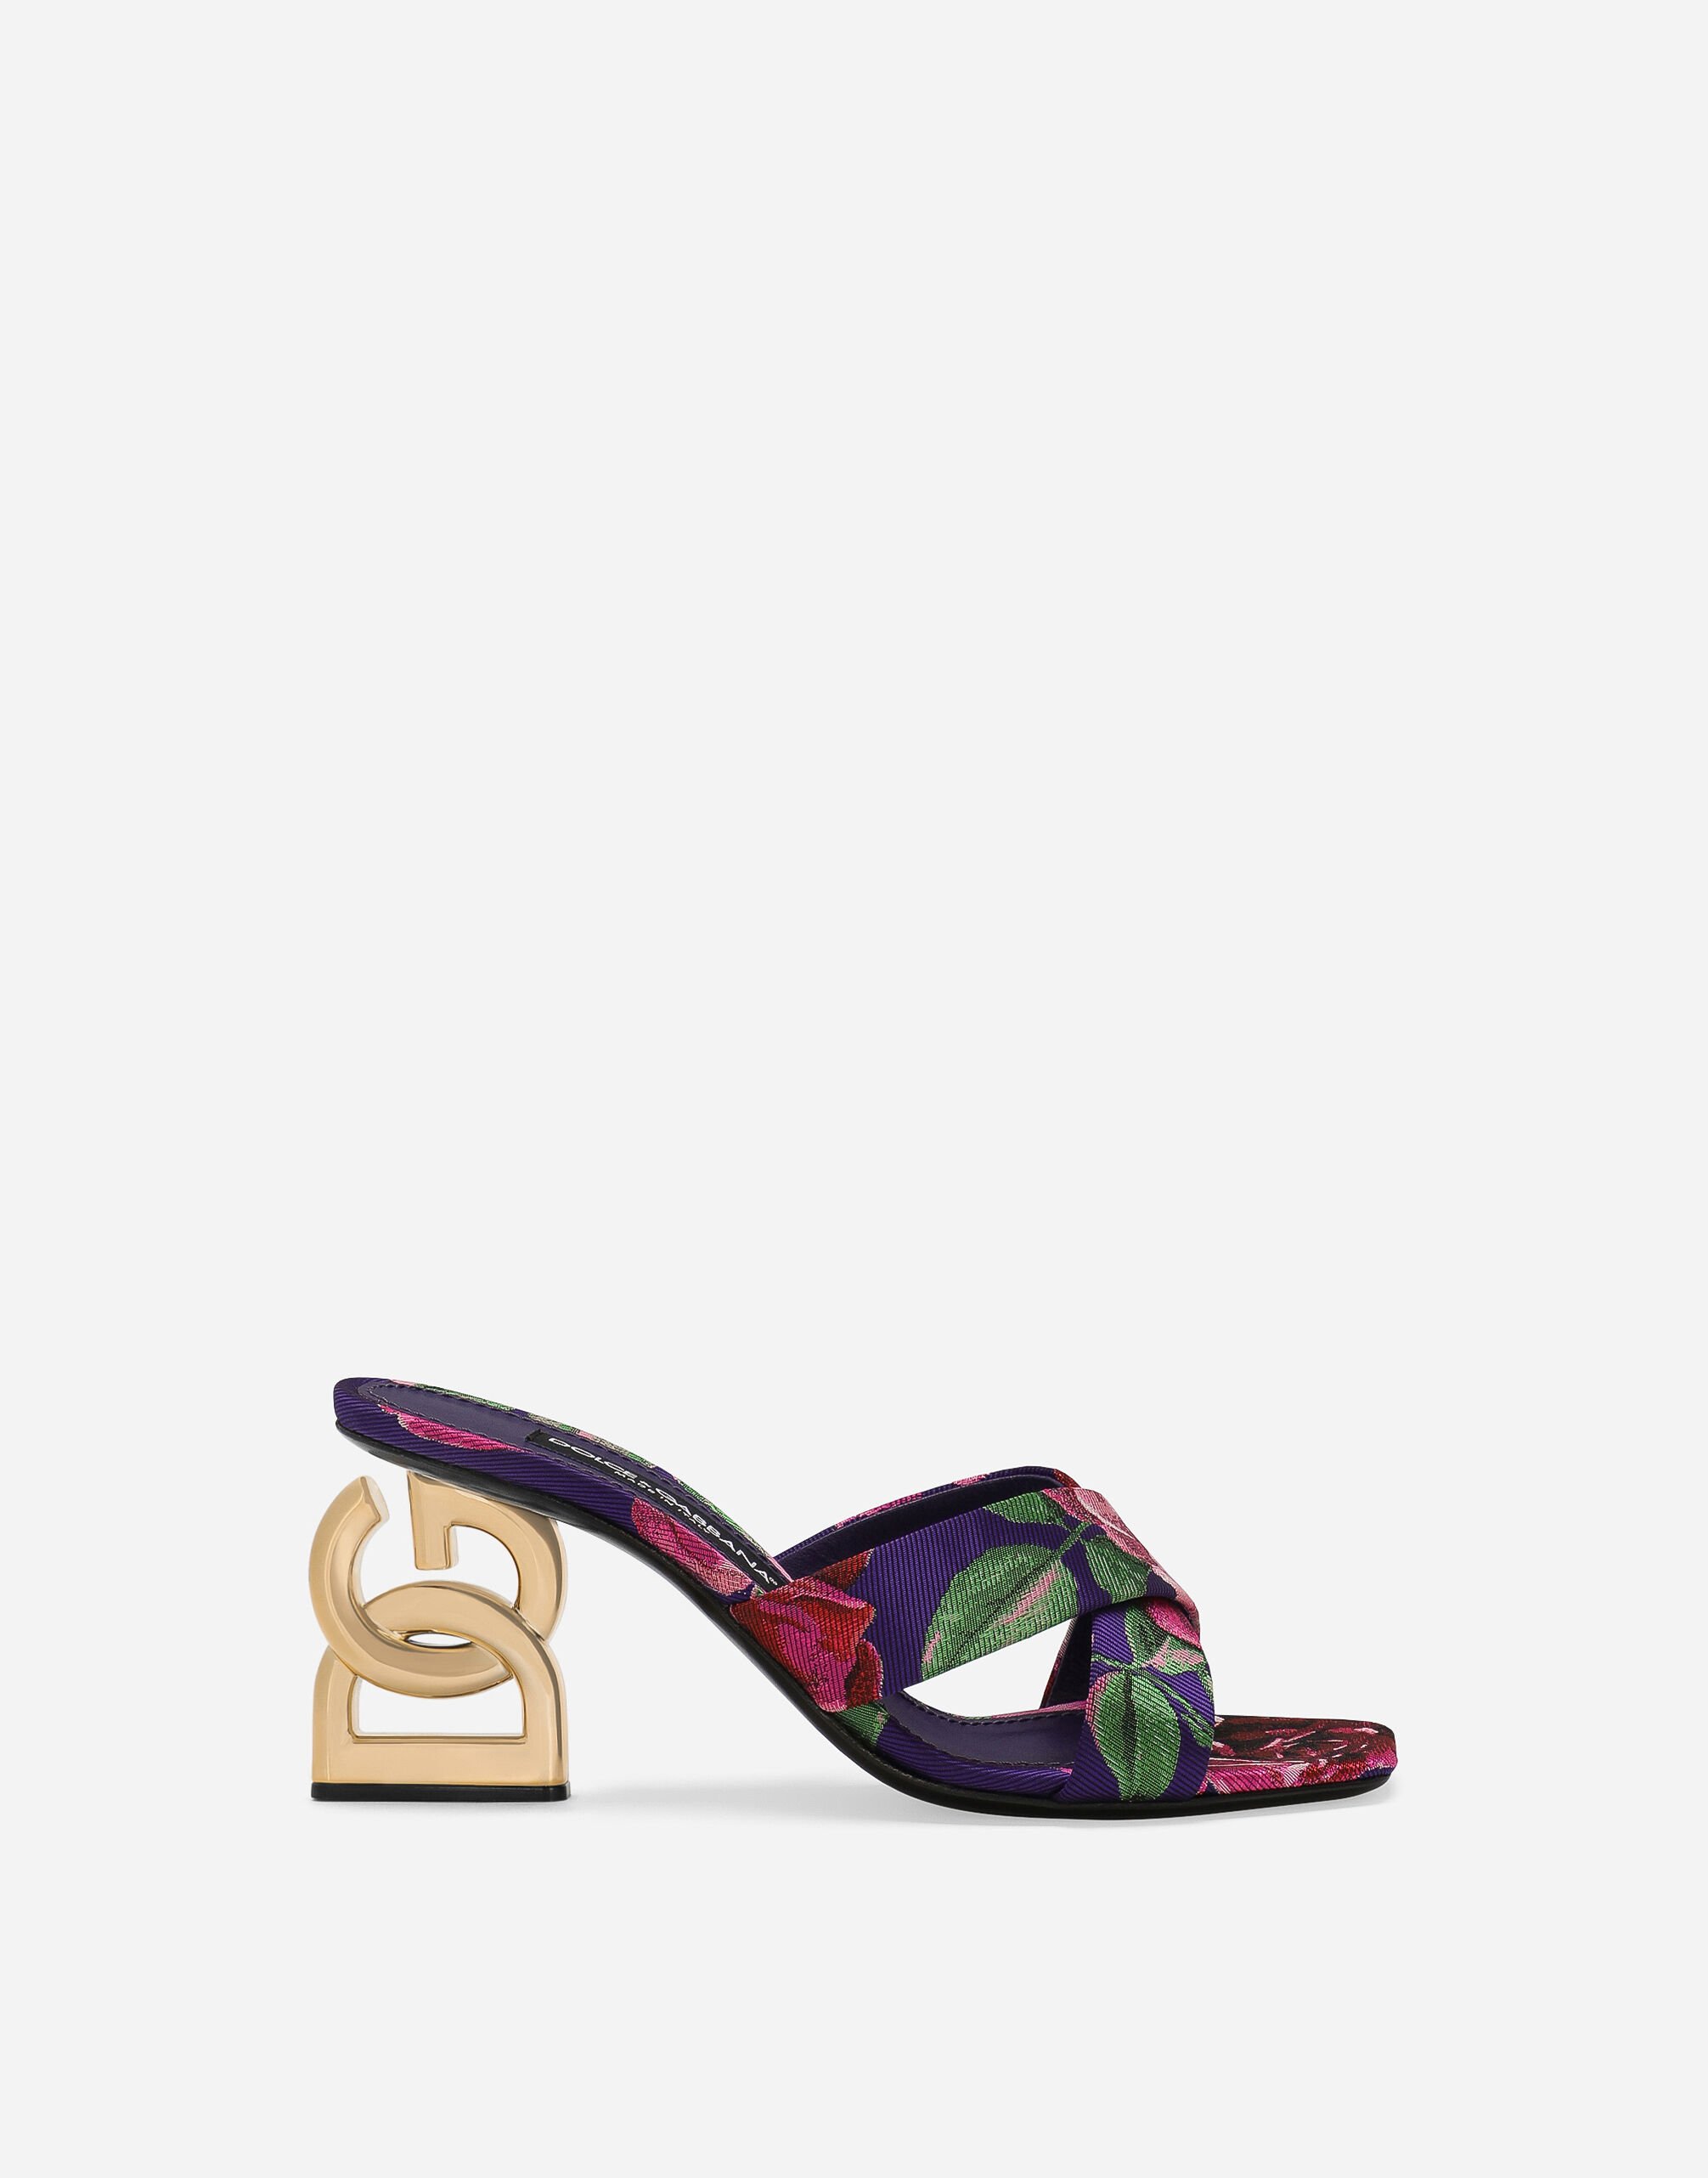 Dolce & Gabbana Mule 3.5 in jacquard Stampa O9A46JFSG8D